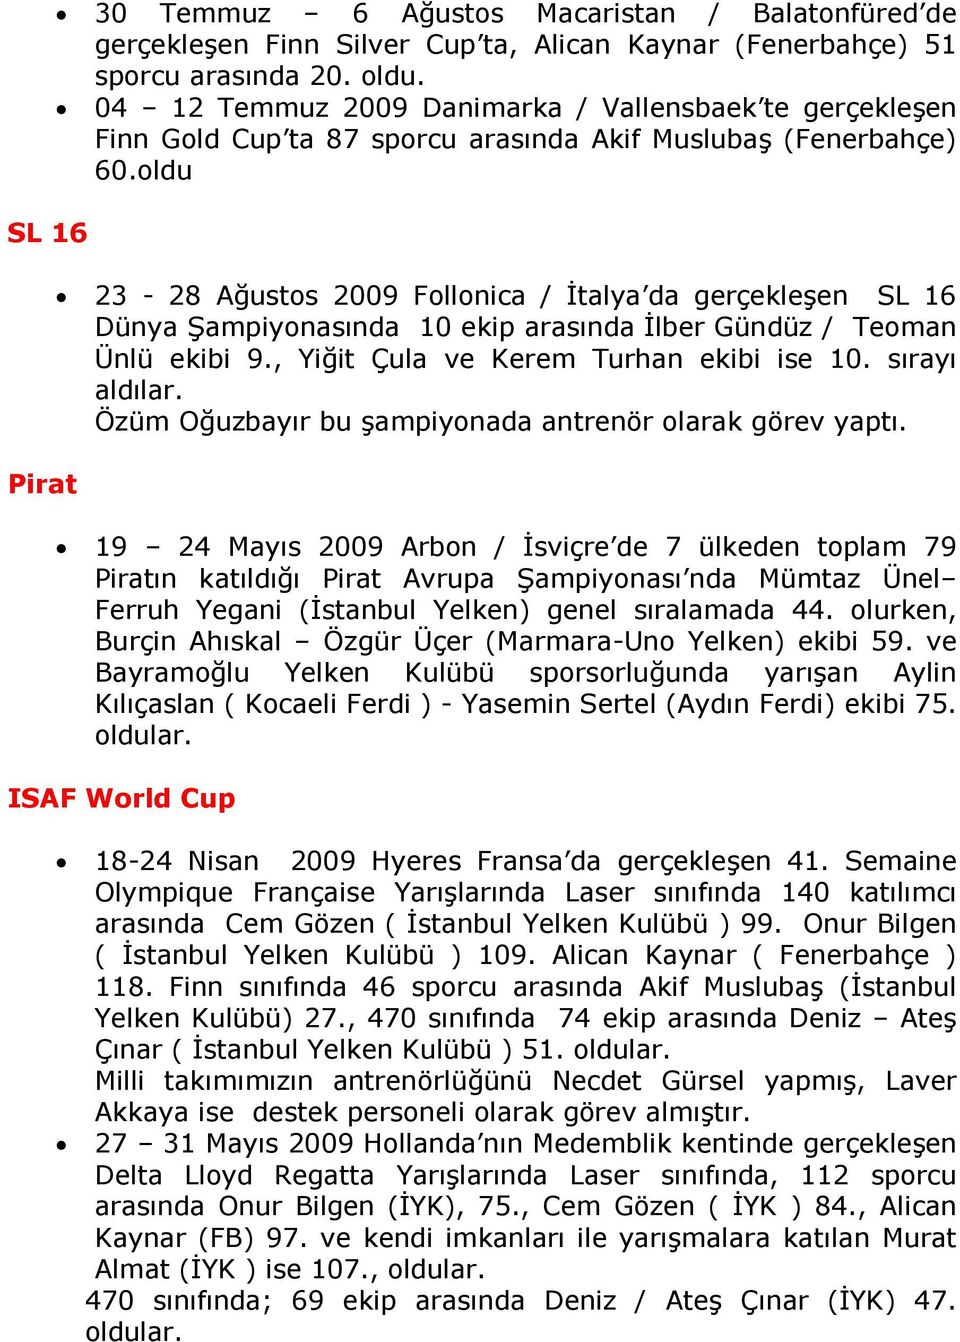 oldu 23-28 Ağustos 2009 Follonica / Đtalya da gerçekleşen SL 16 Dünya Şampiyonasında 10 ekip arasında Đlber Gündüz / Teoman Ünlü ekibi 9., Yiğit Çula ve Kerem Turhan ekibi ise 10. sırayı aldılar.